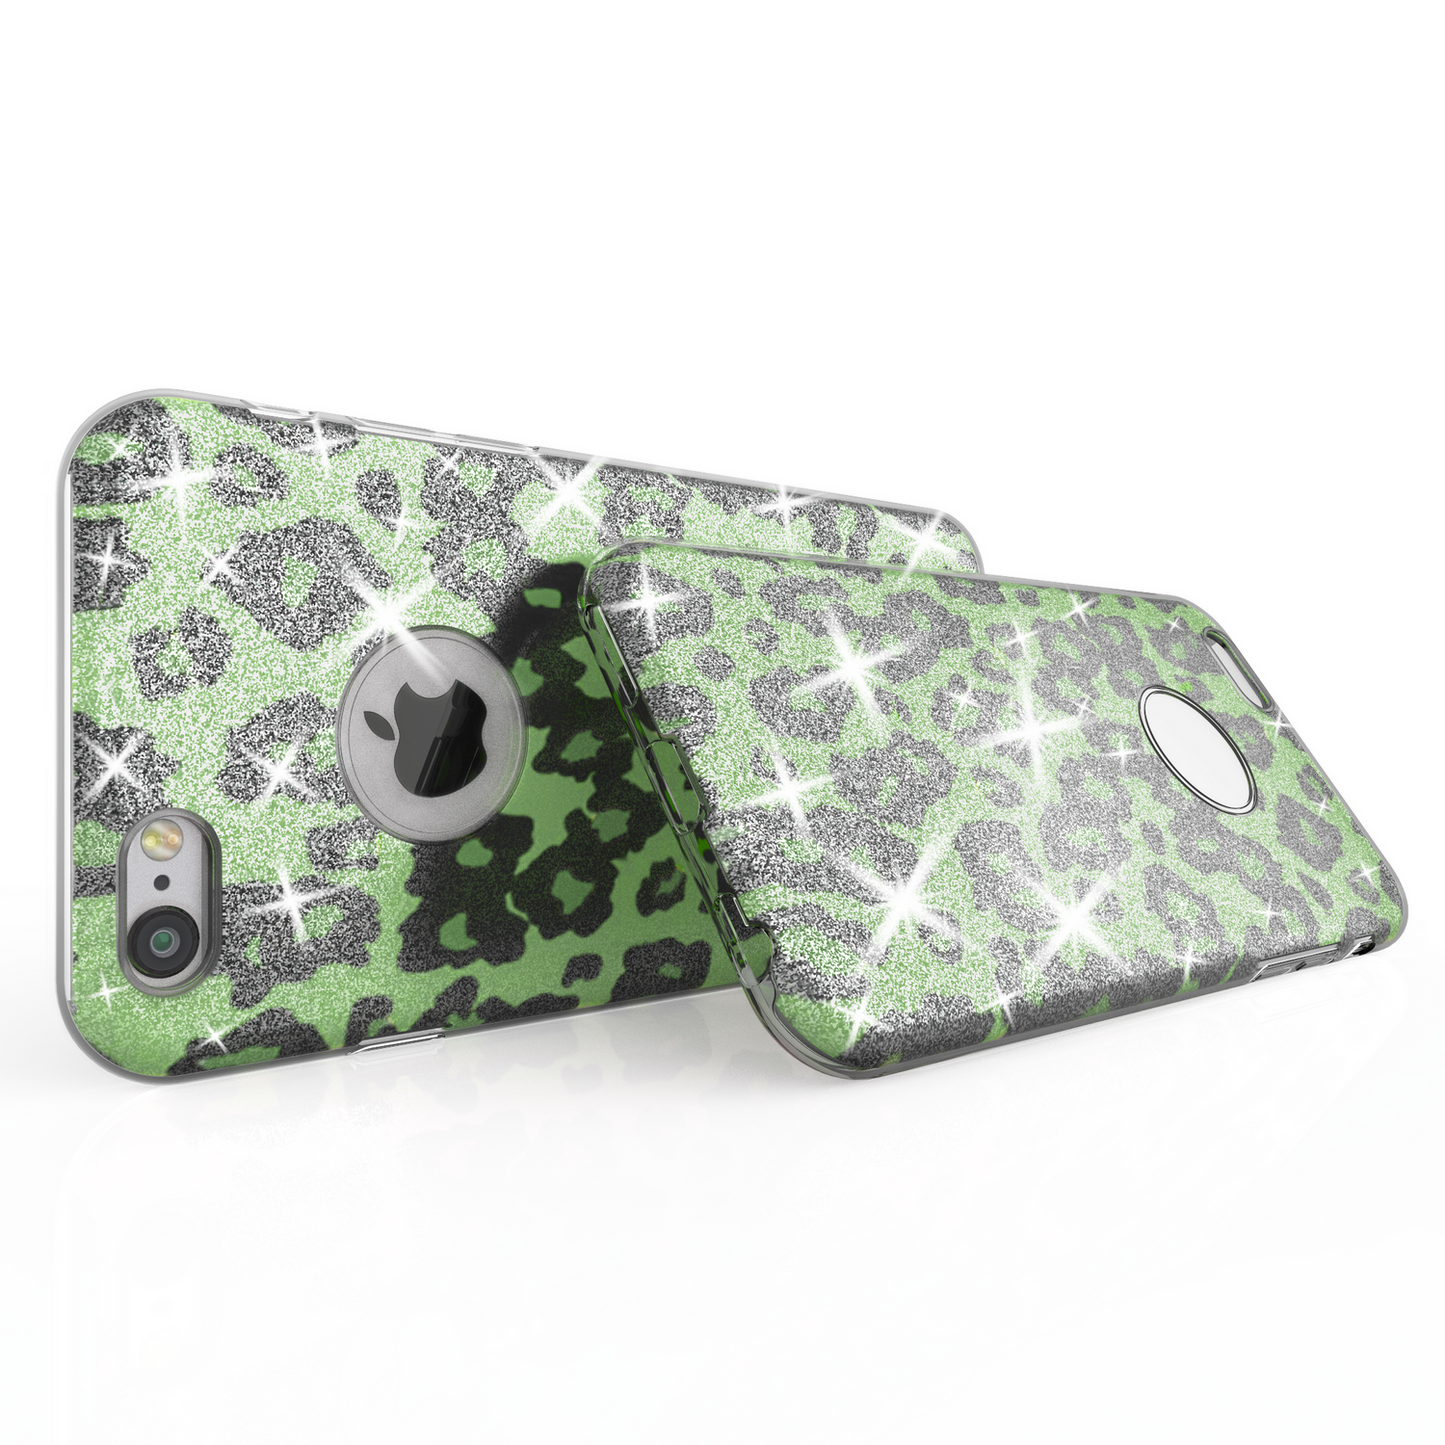 NALIA für IPHONE 6 / 6S Hülle TPU Silikon Cover Case Sparkle Leopard - Grün